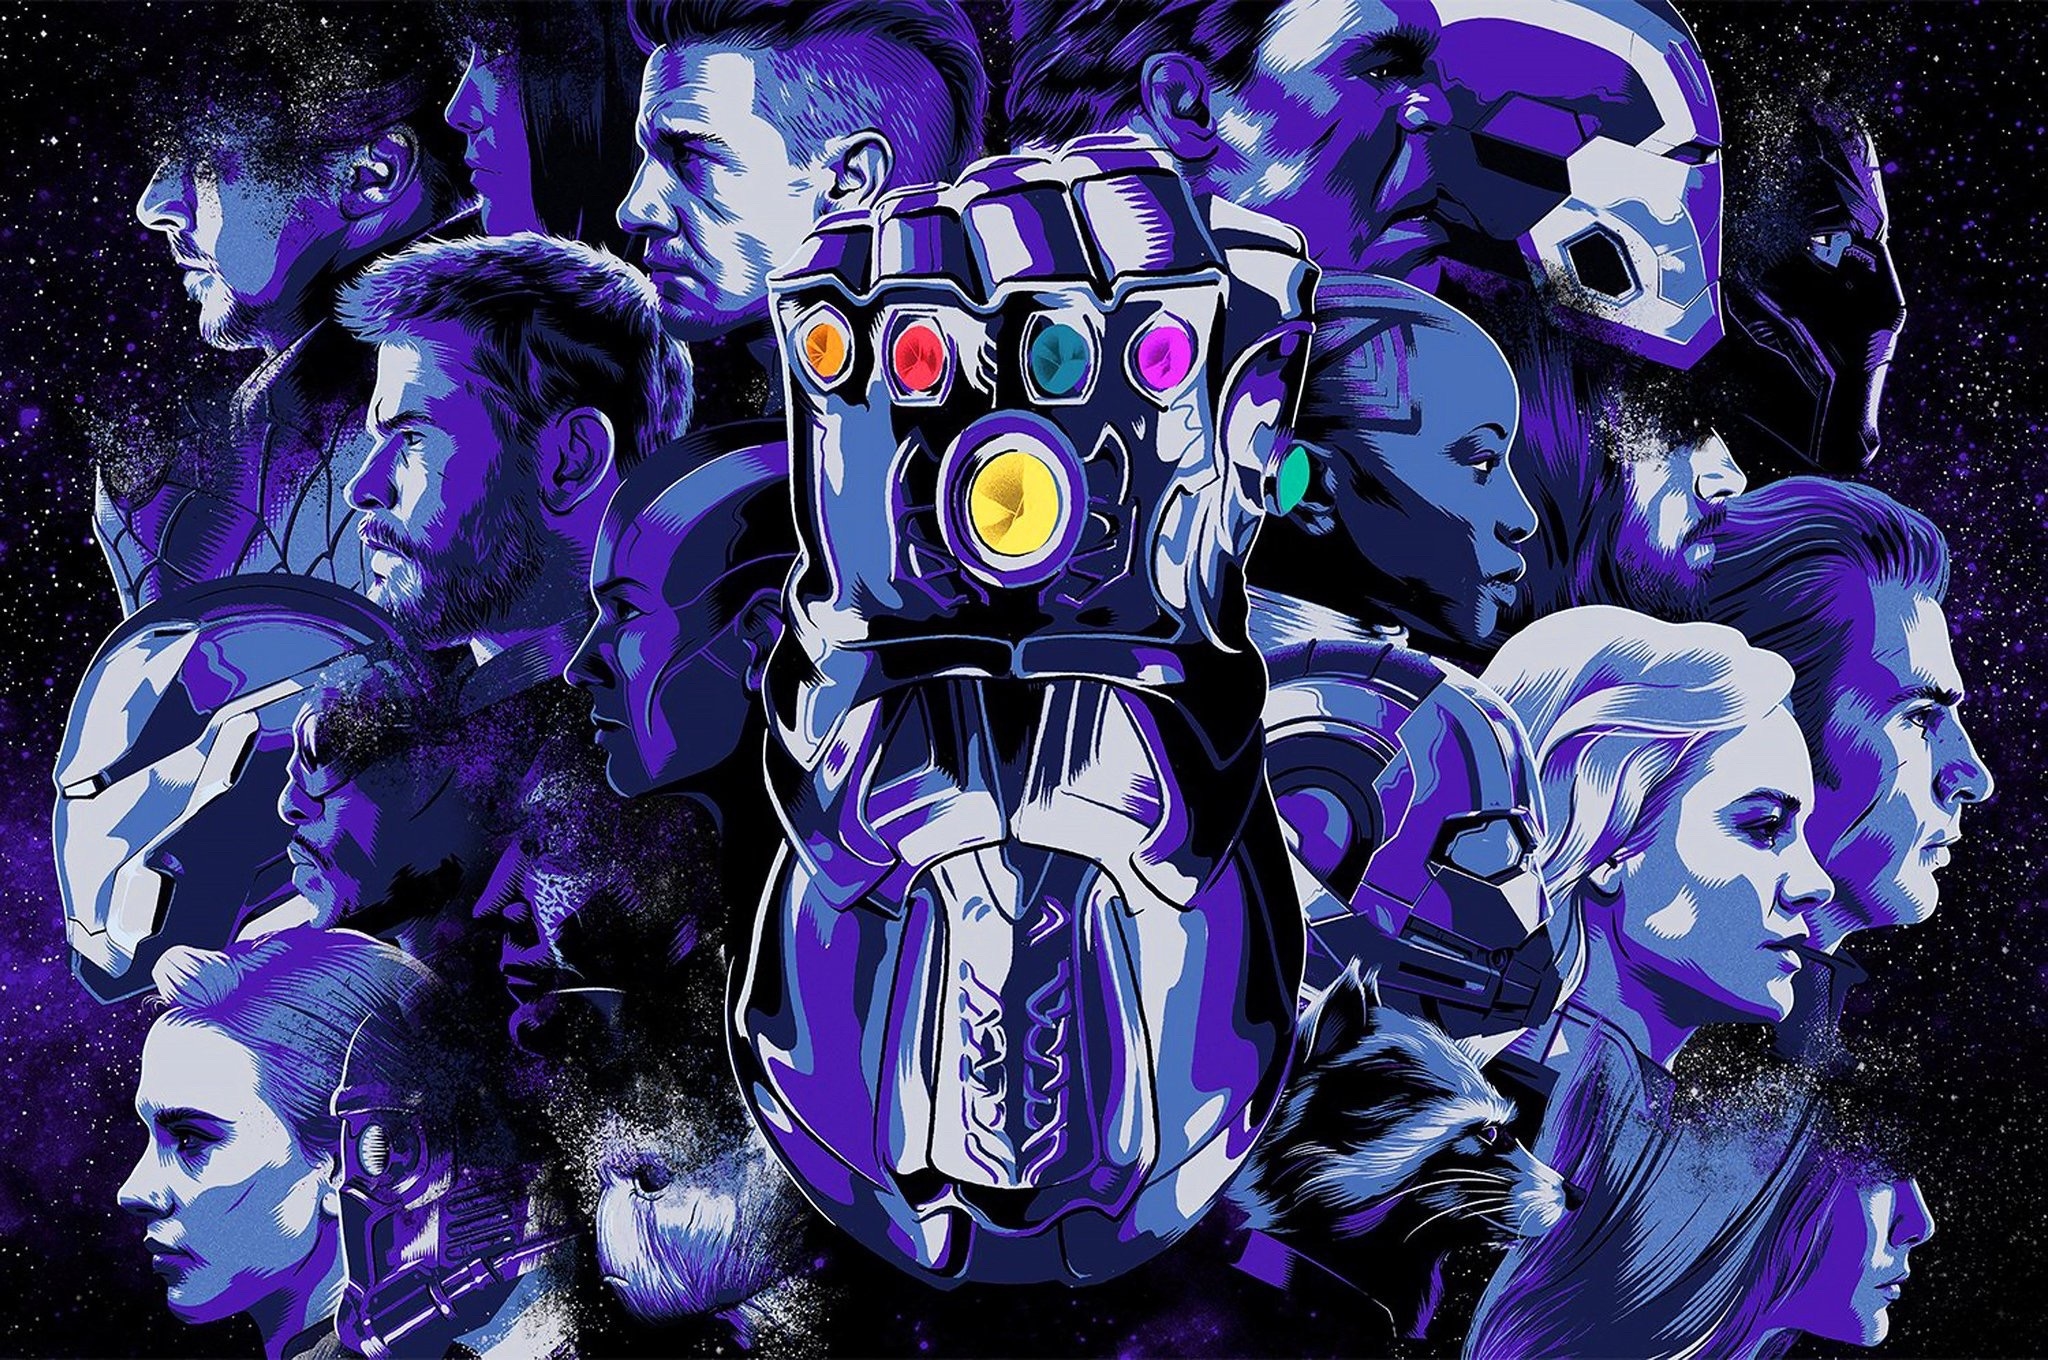 Best Avengers Endgame Avengers 4 Wallpapers For Desktop - Avengers Endgame Iron Man , HD Wallpaper & Backgrounds